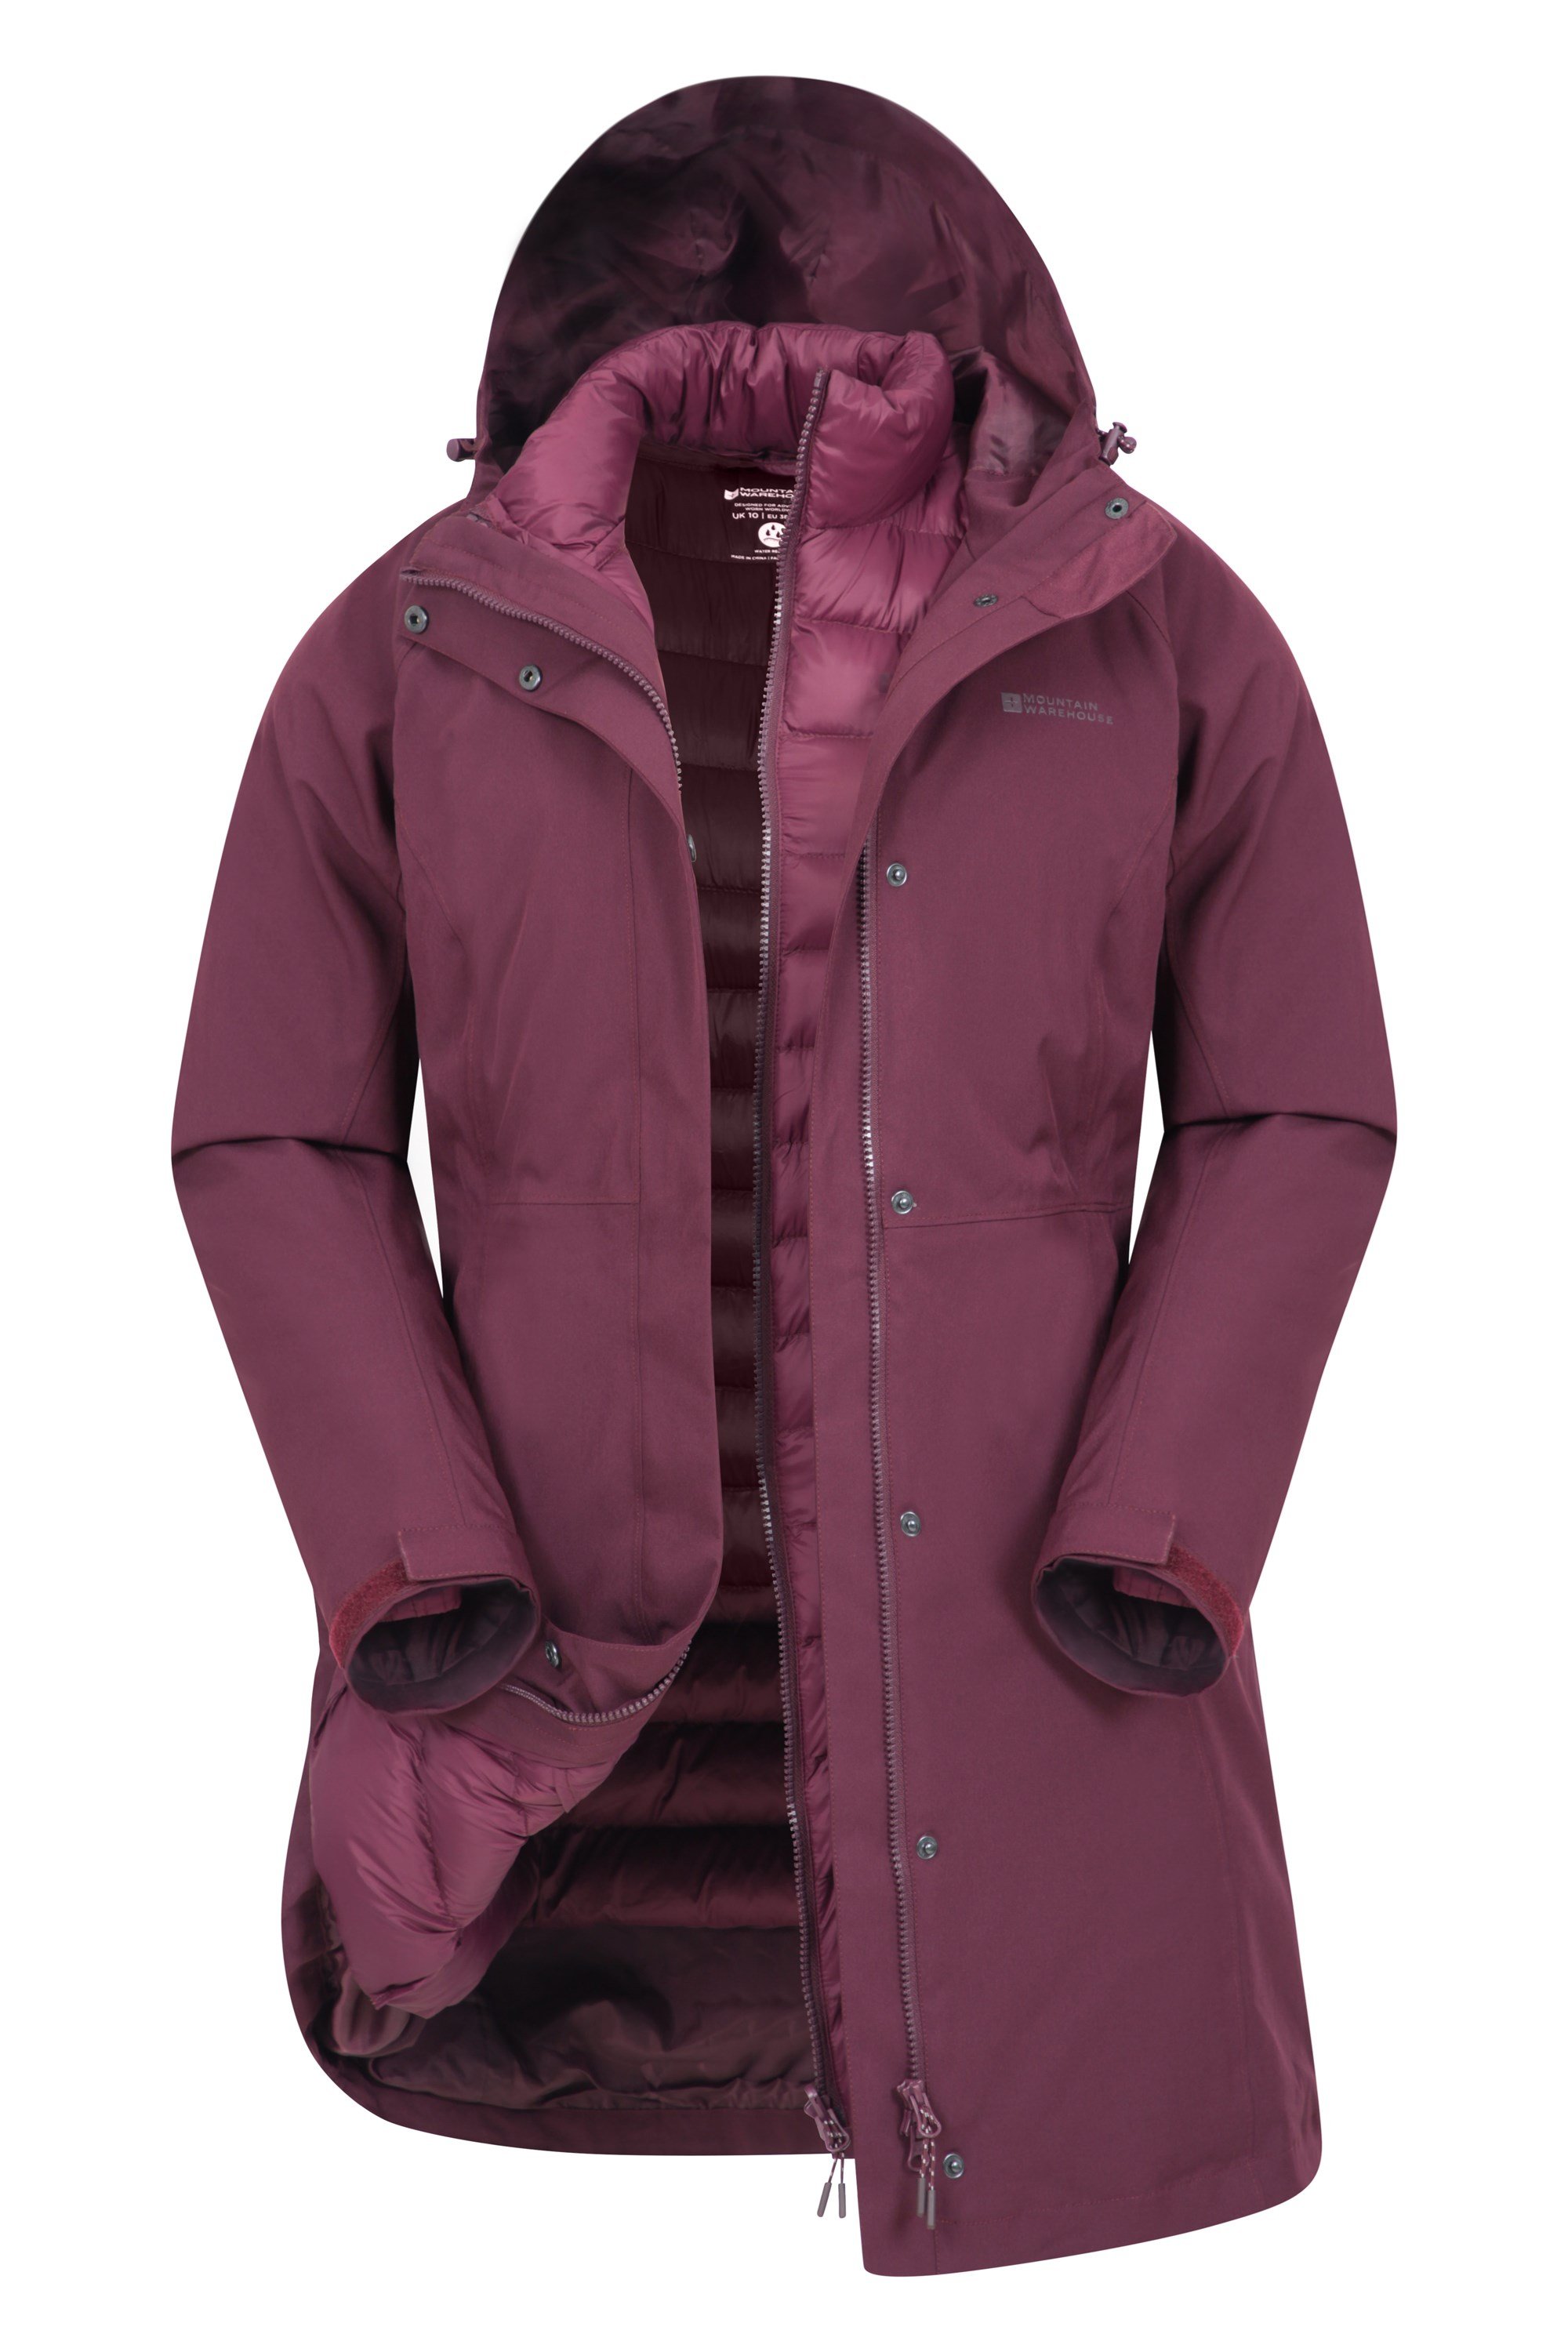 Alaskan Womens 3 in 1 Long Waterproof Jacket - Purple